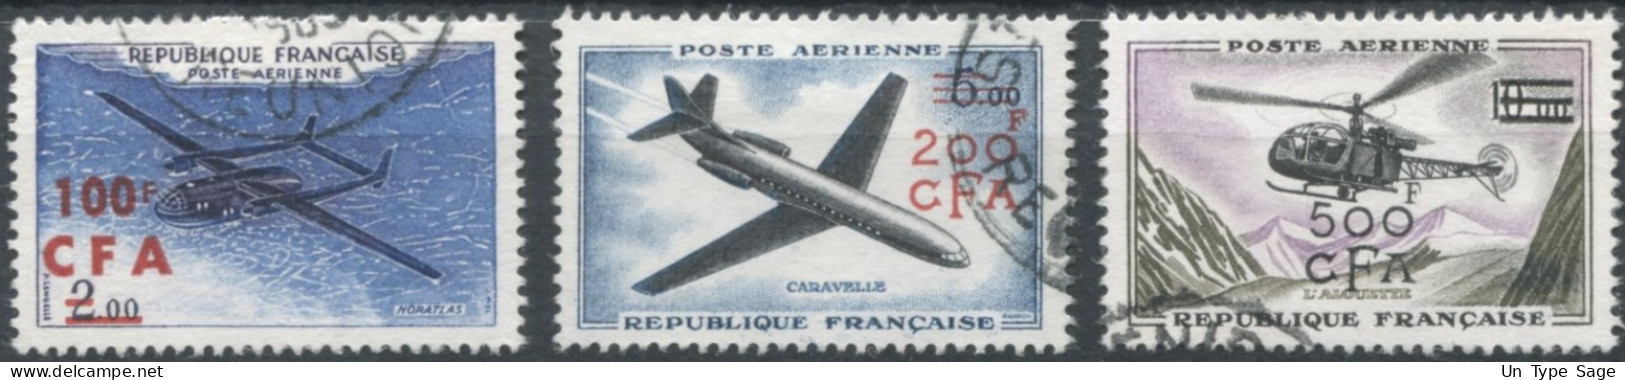 Réunion Poste Aérienne N°58 à 60 - Oblitérés - (F1589) - Luftpost